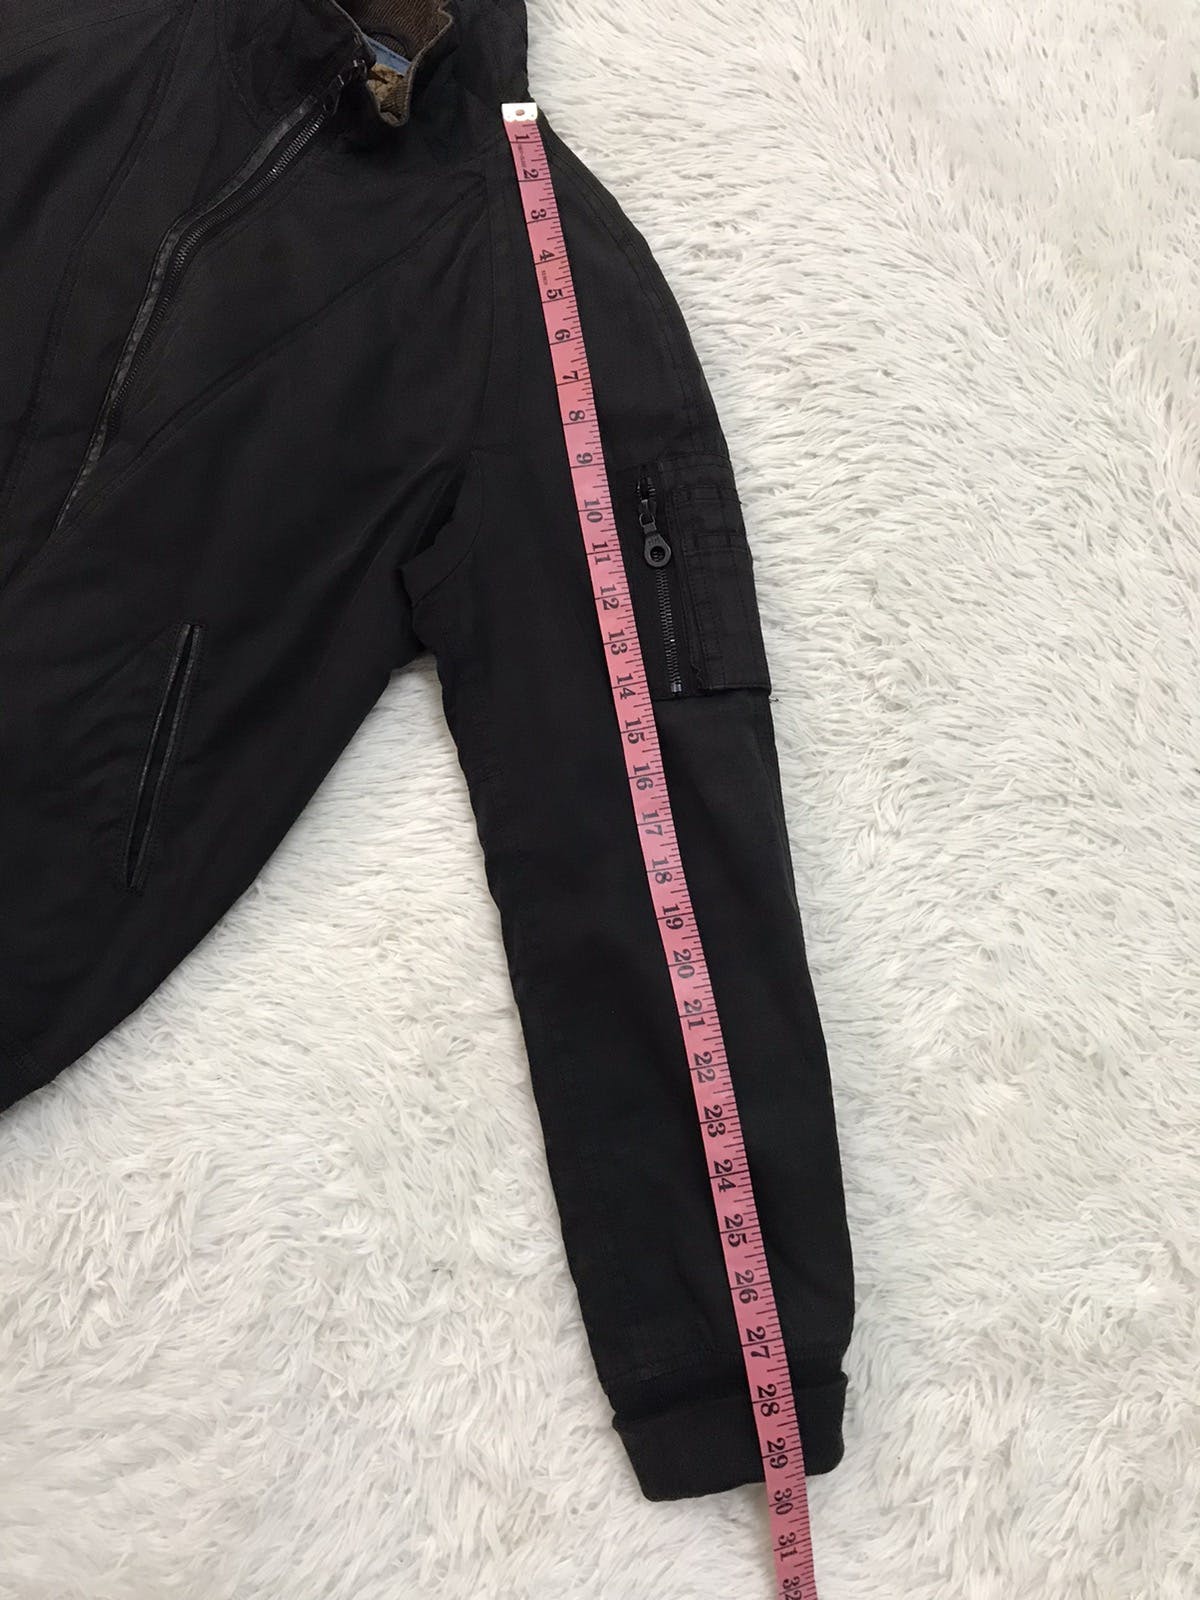 Vtg Nonnative Thinsulate Insulation Jacket Riri Zipper - 15